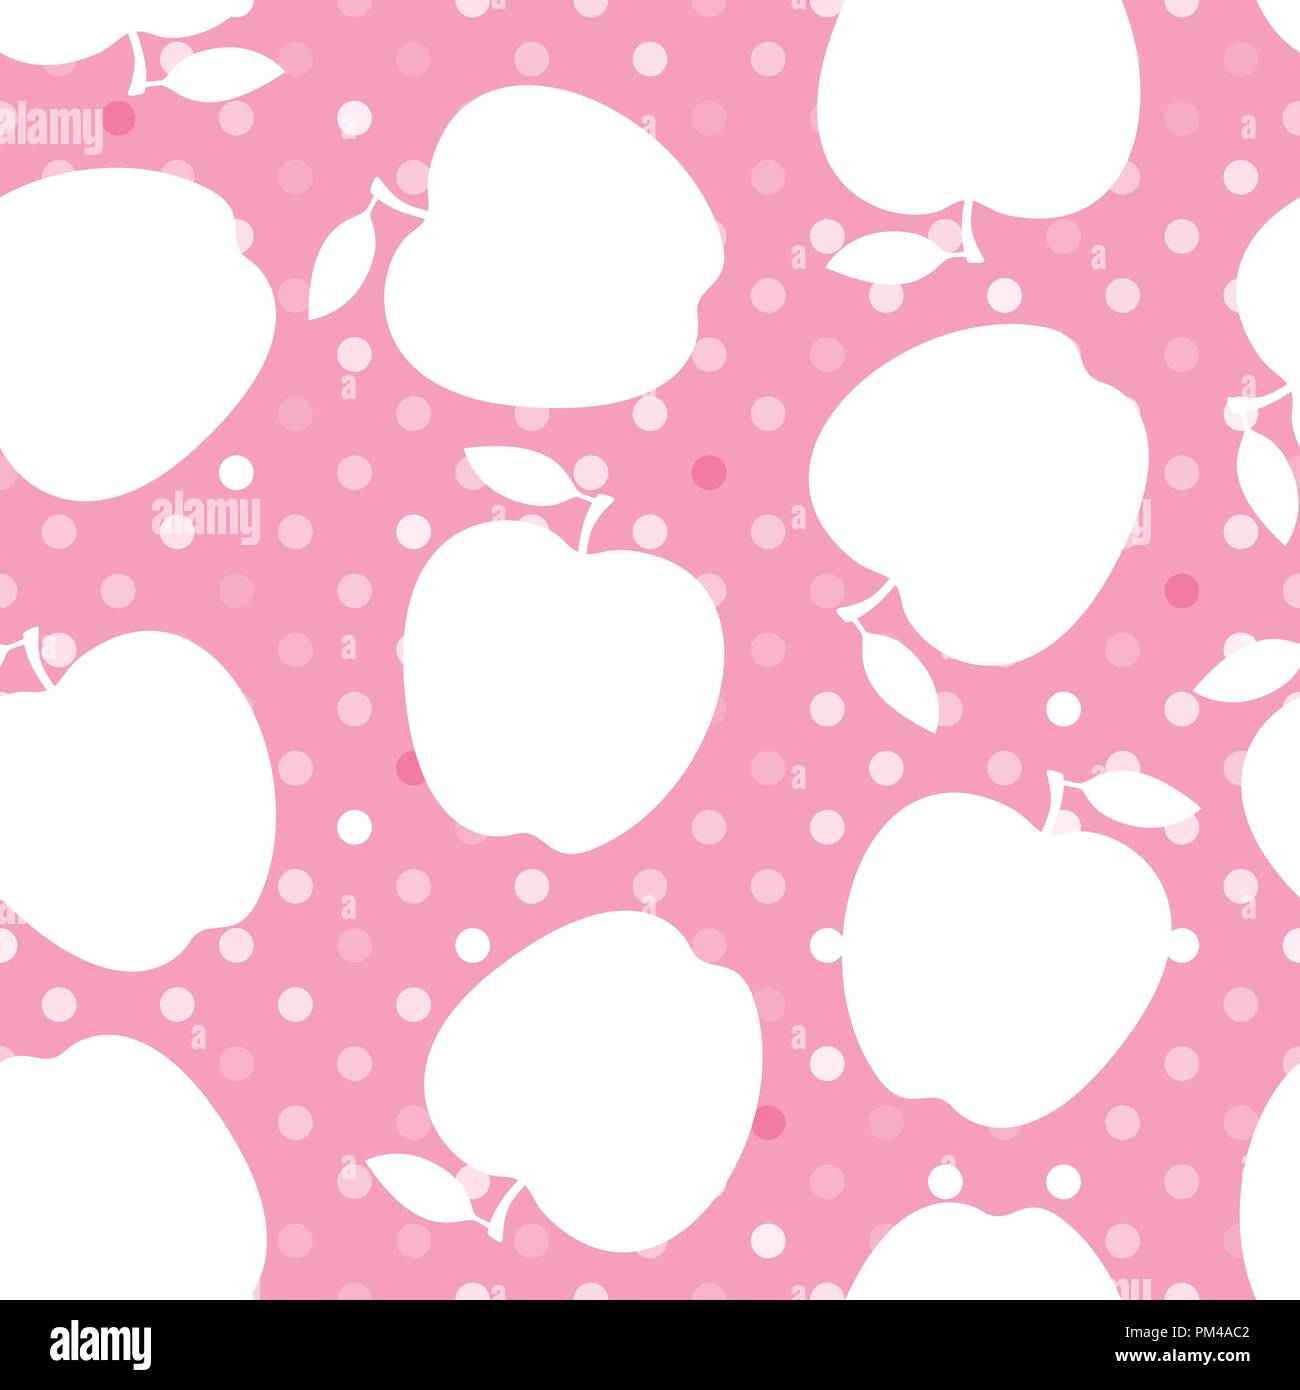 Apple silhouette bianca su una rosa polka dot. Modello senza giunture. Illustrazione Vettoriale. Illustrazione Vettoriale